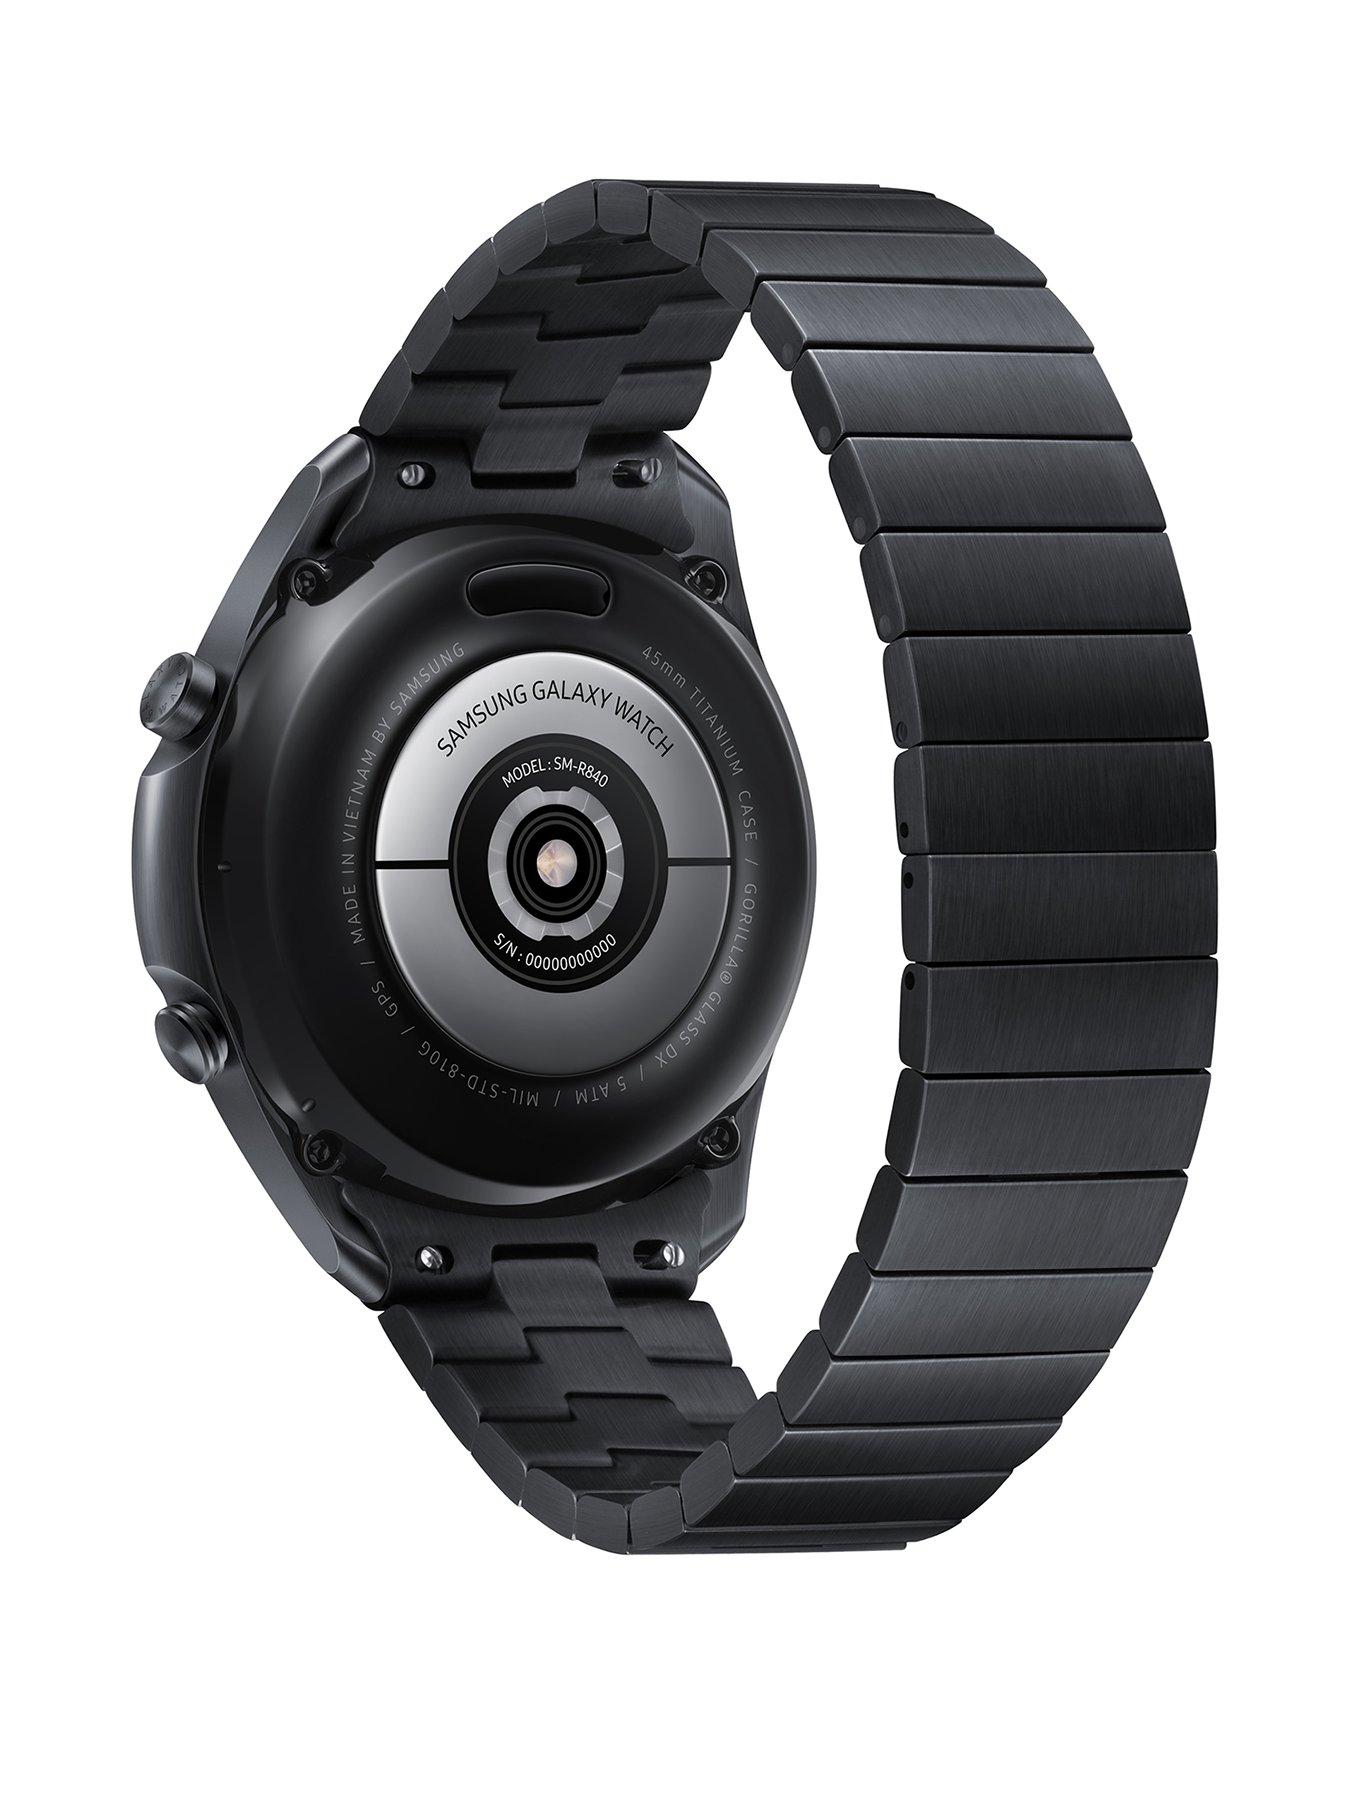 Samsung watch 45. Samsung Galaxy watch 3 Titanium. Самсунг вотч 3 45мм. Samsung Galaxy watch 3 45mm Titanium. Samsung Galaxy watch 3 45mm Black SM-r840.